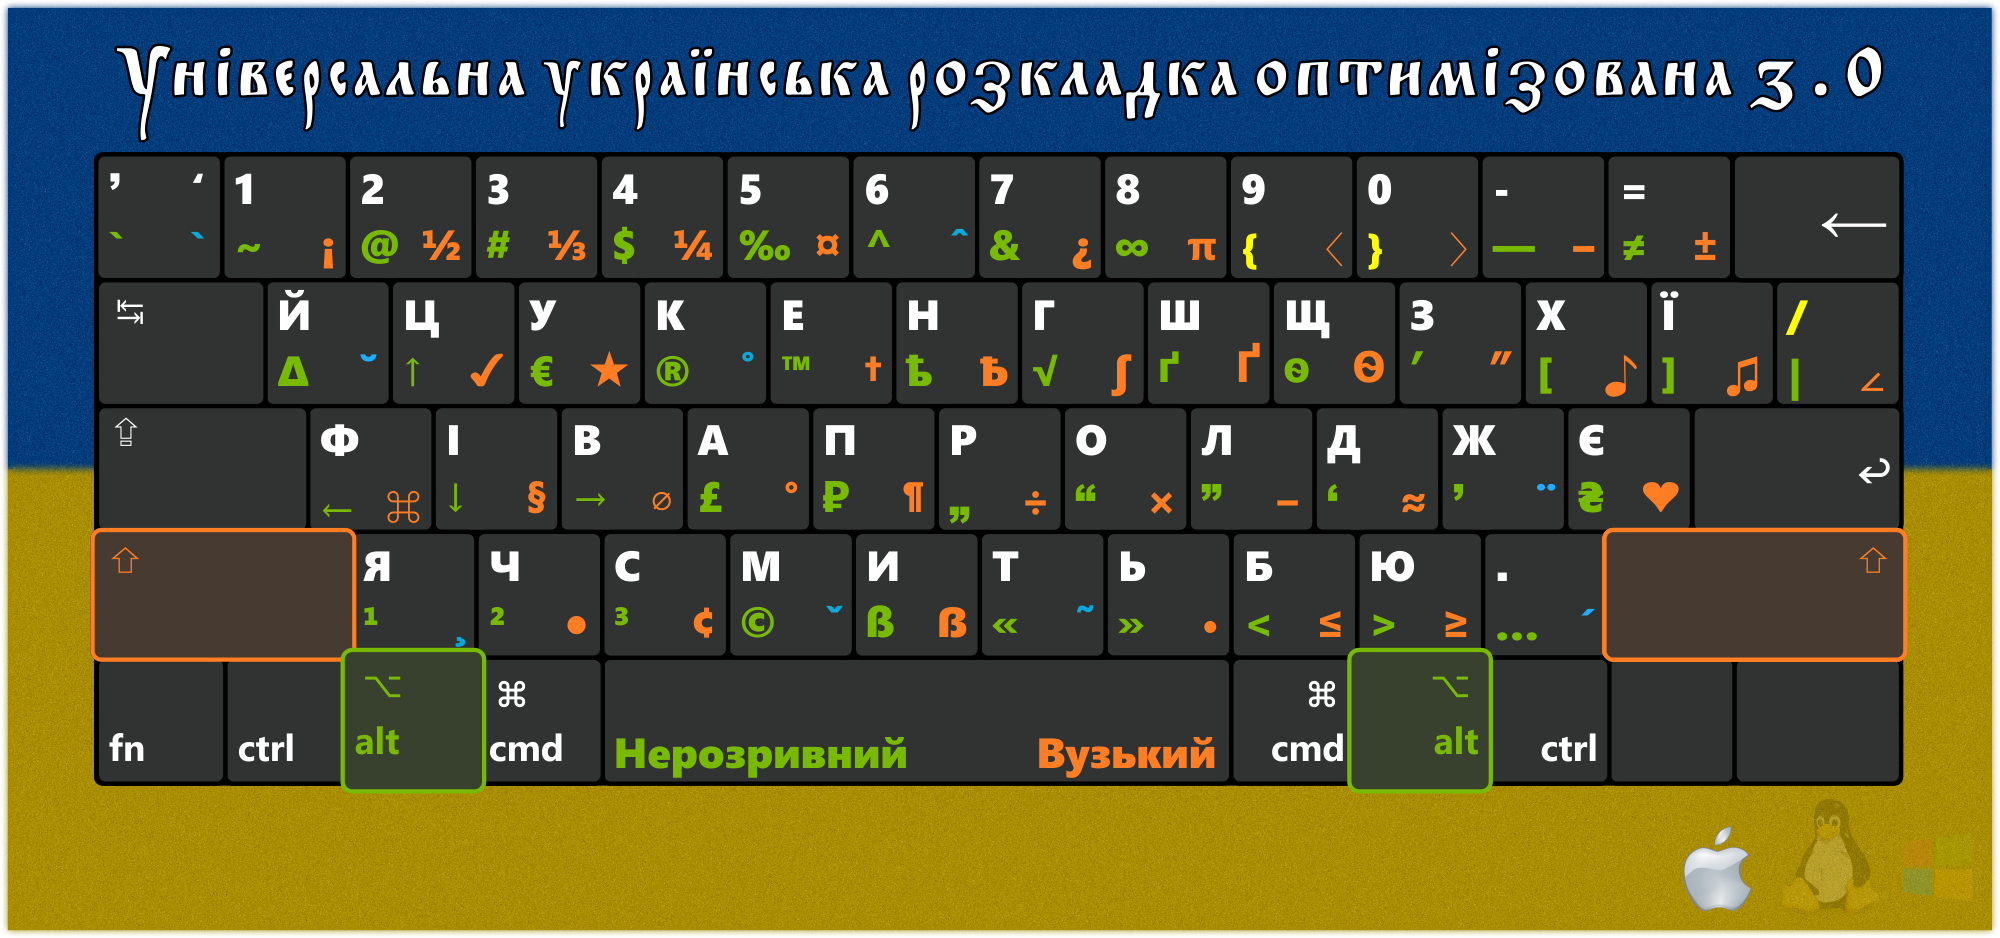 Украинская раскладка клавиатуры 